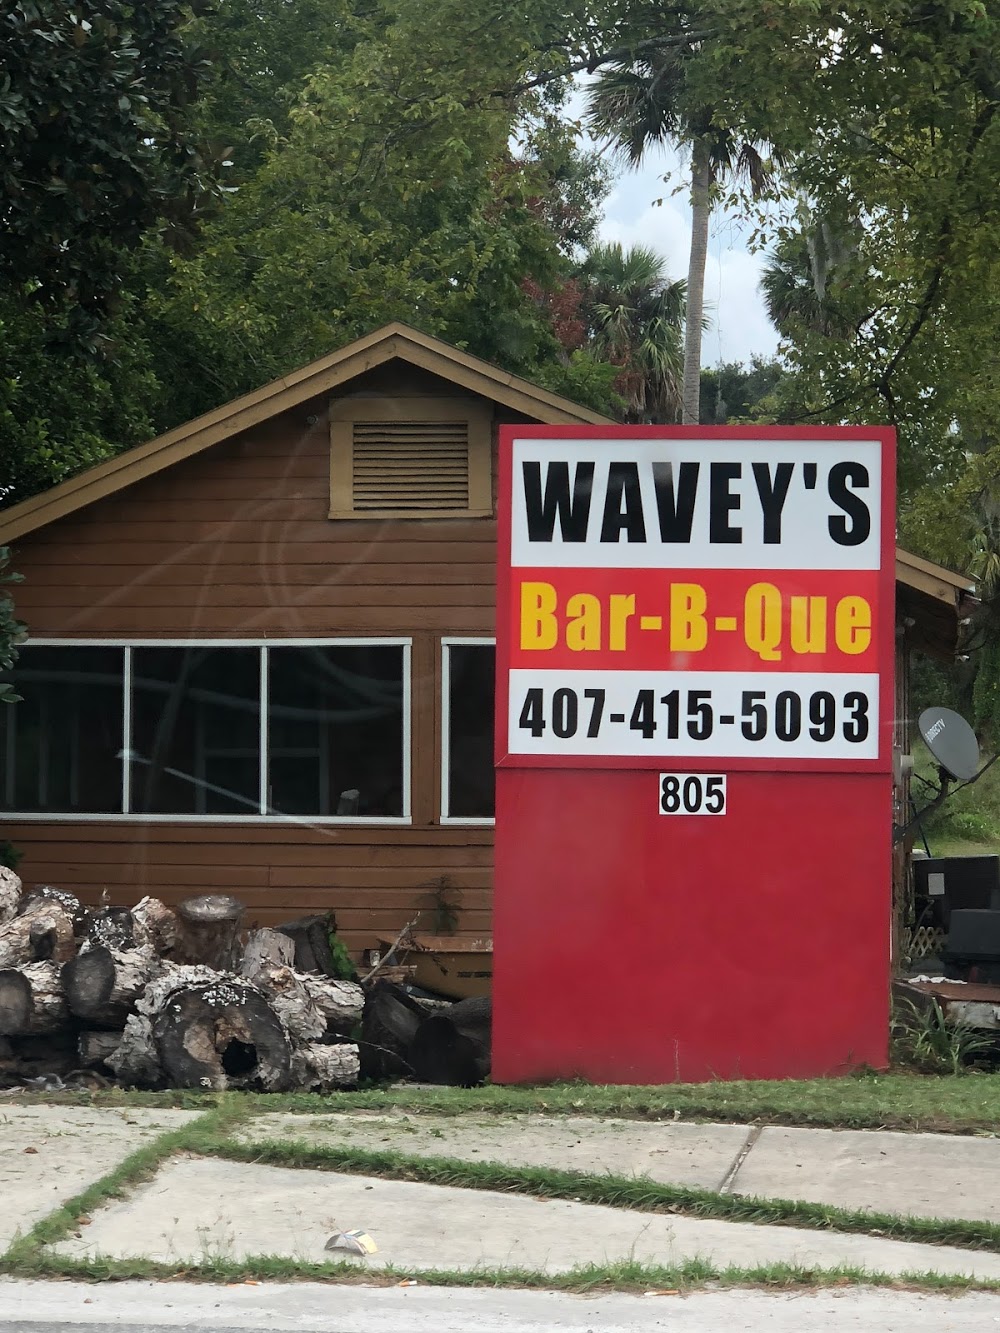 Wavey’s Bar-B-Que